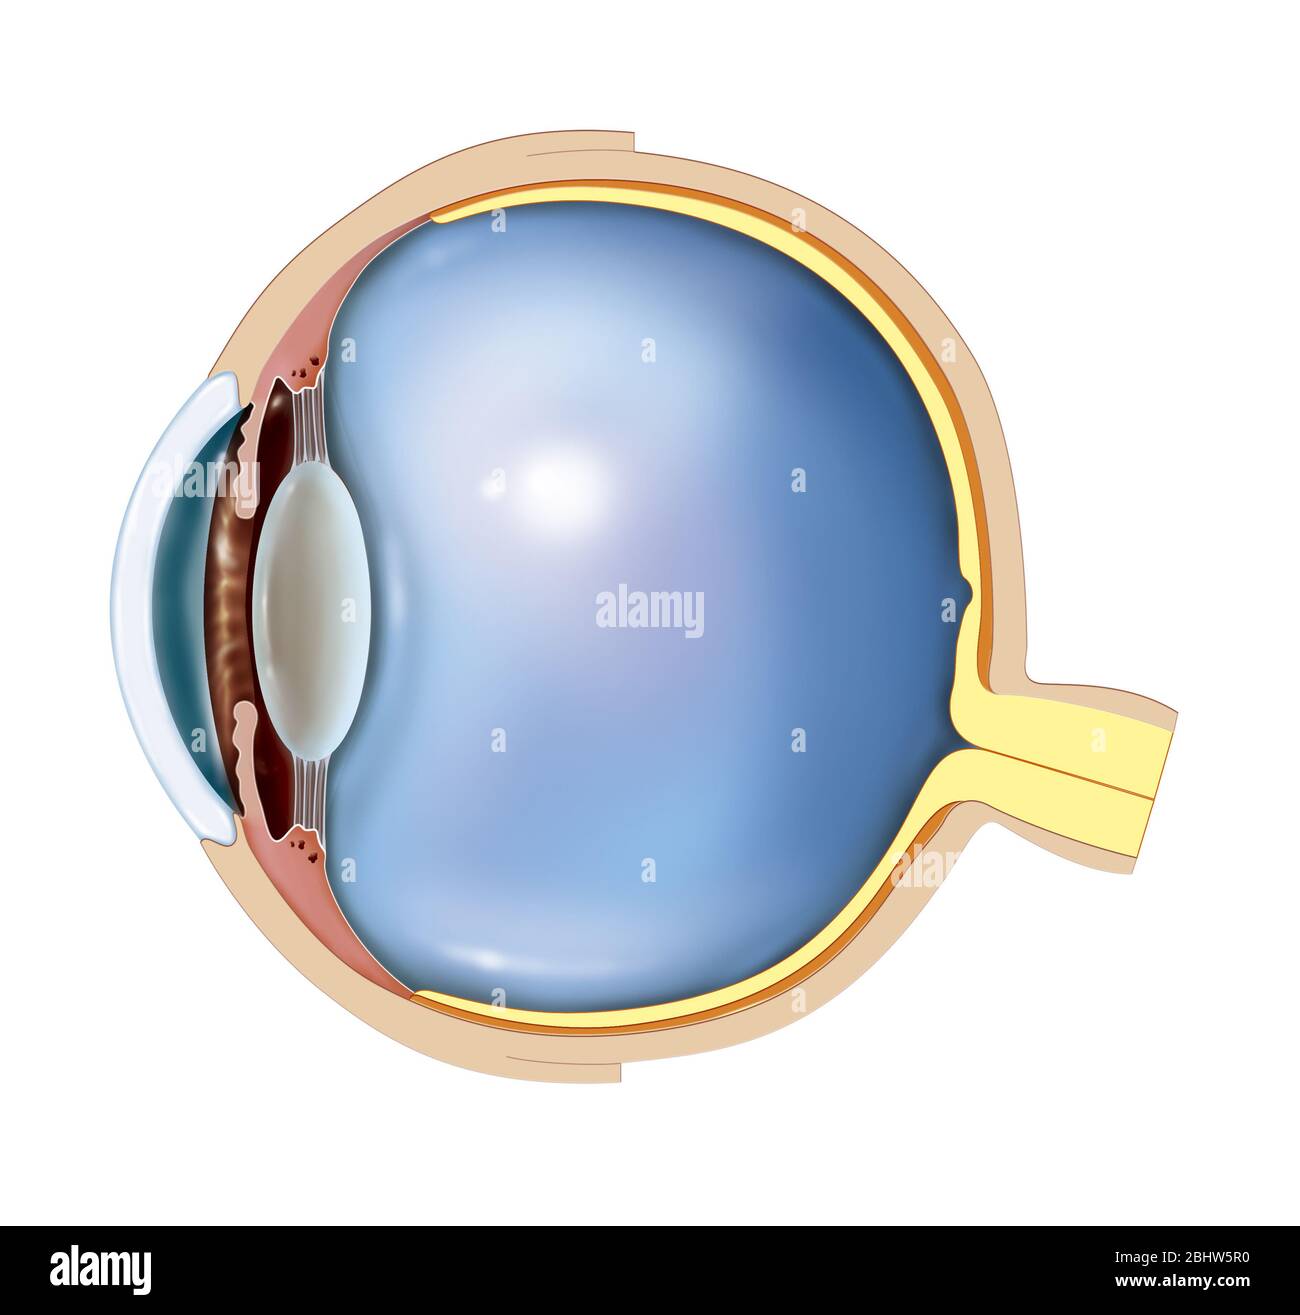 Anatomia di un occhio normale. Da destra a sinistra sono rappresentati il nervo ottico in giallo che si estende dalla retina, il coroide in arancione fino al ciliare Foto Stock